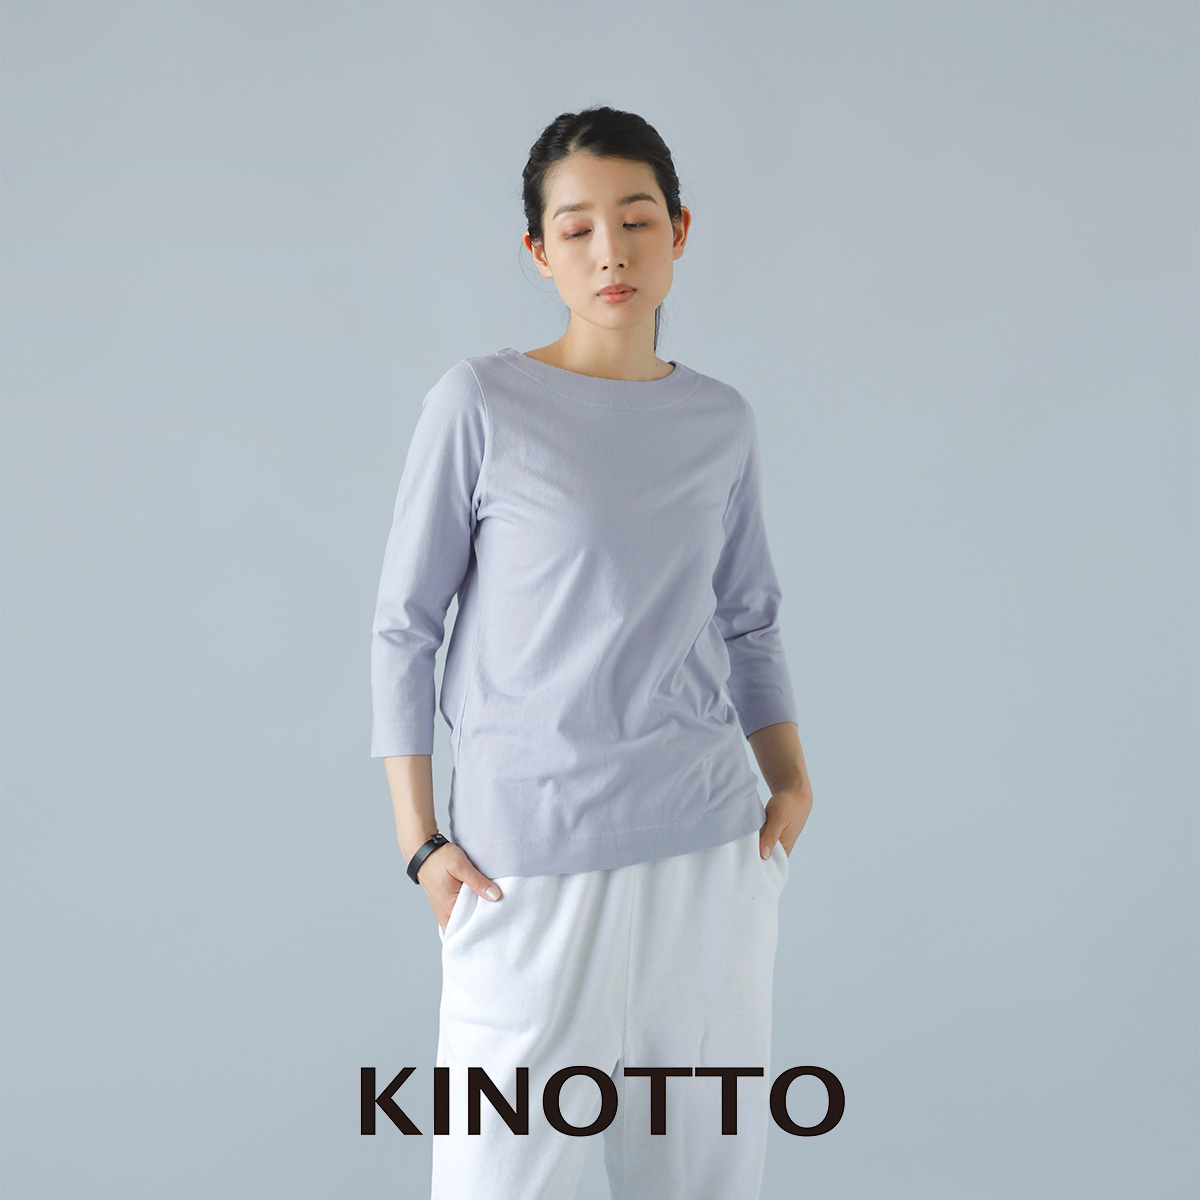 KINOTTO(キノット)タンギス綿 7分袖 ボートネック Tシャツ 2231c001